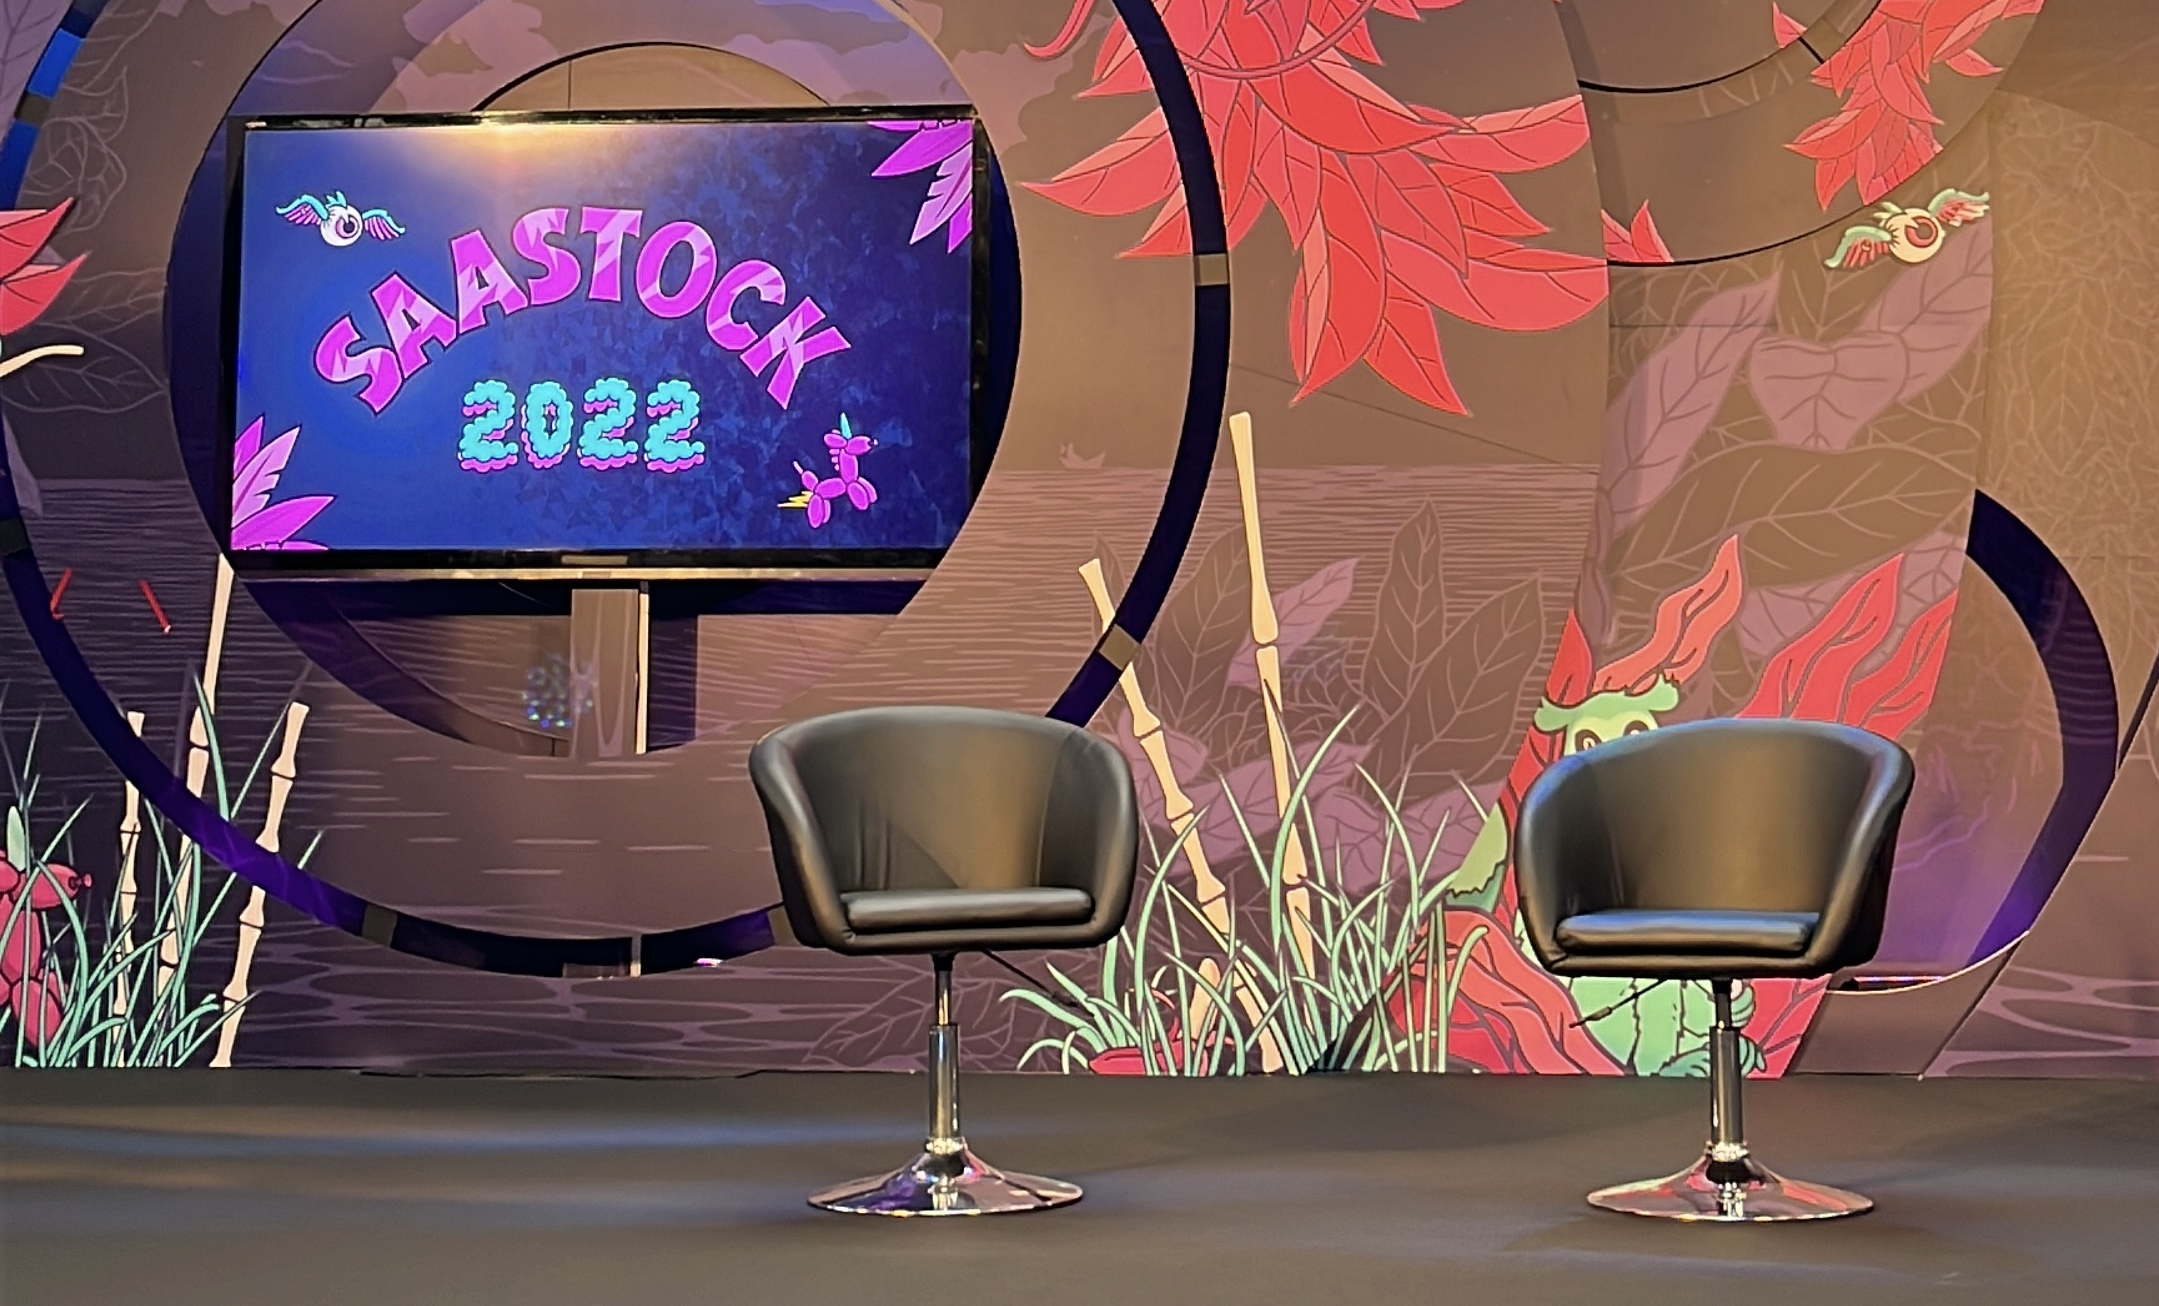 SaaStock 2022 stage